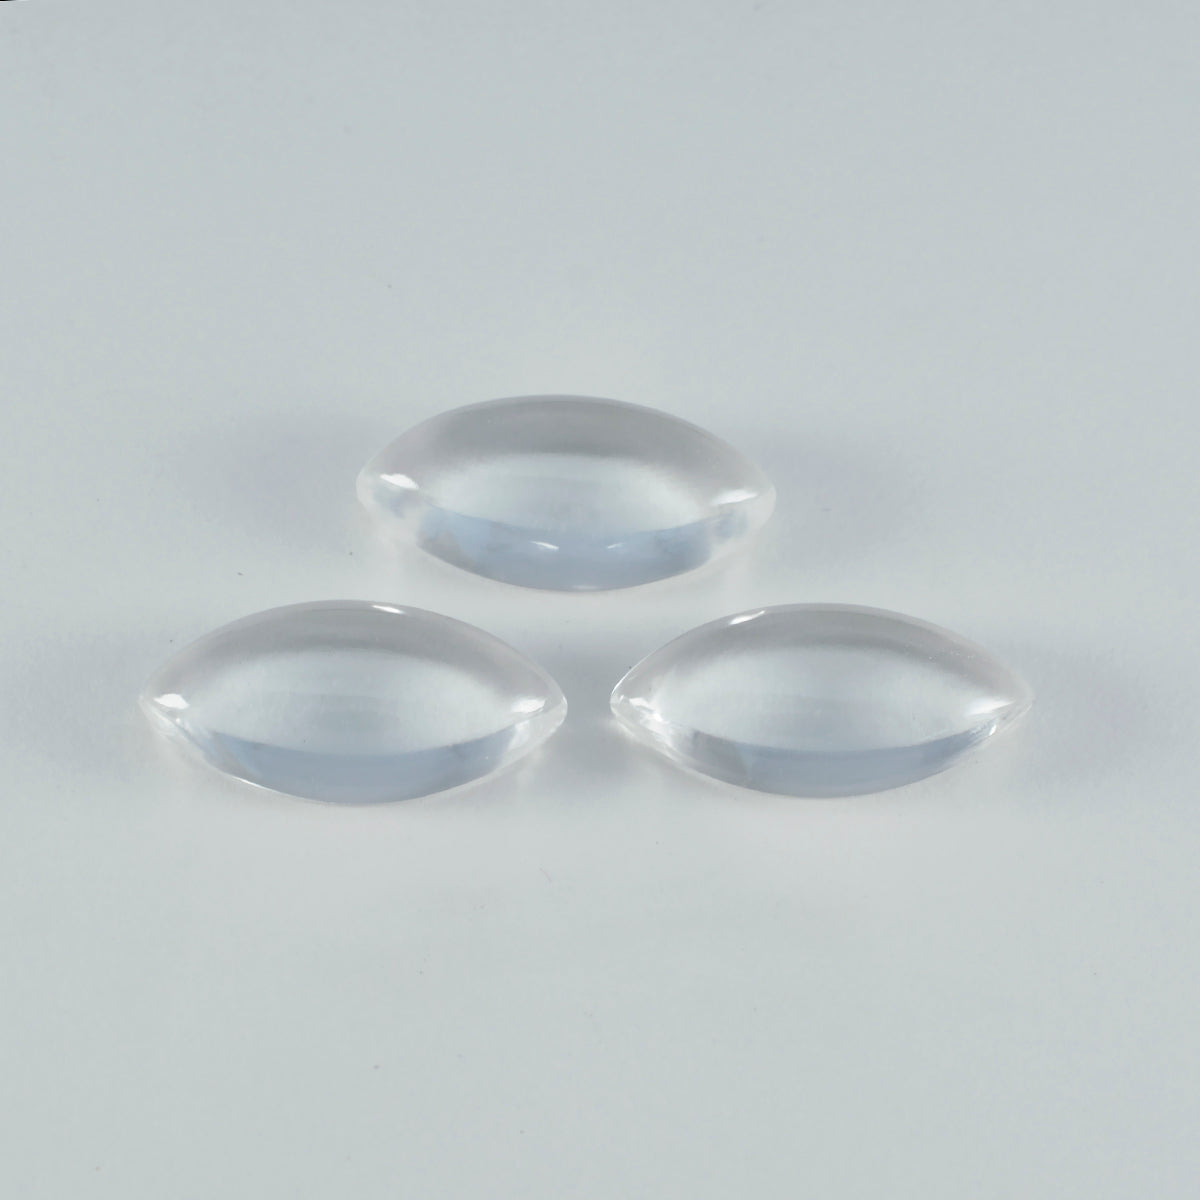 Riyogems 1PC White Crystal Quartz Cabochon 7x14 mm Marquise Shape pretty Quality Gems